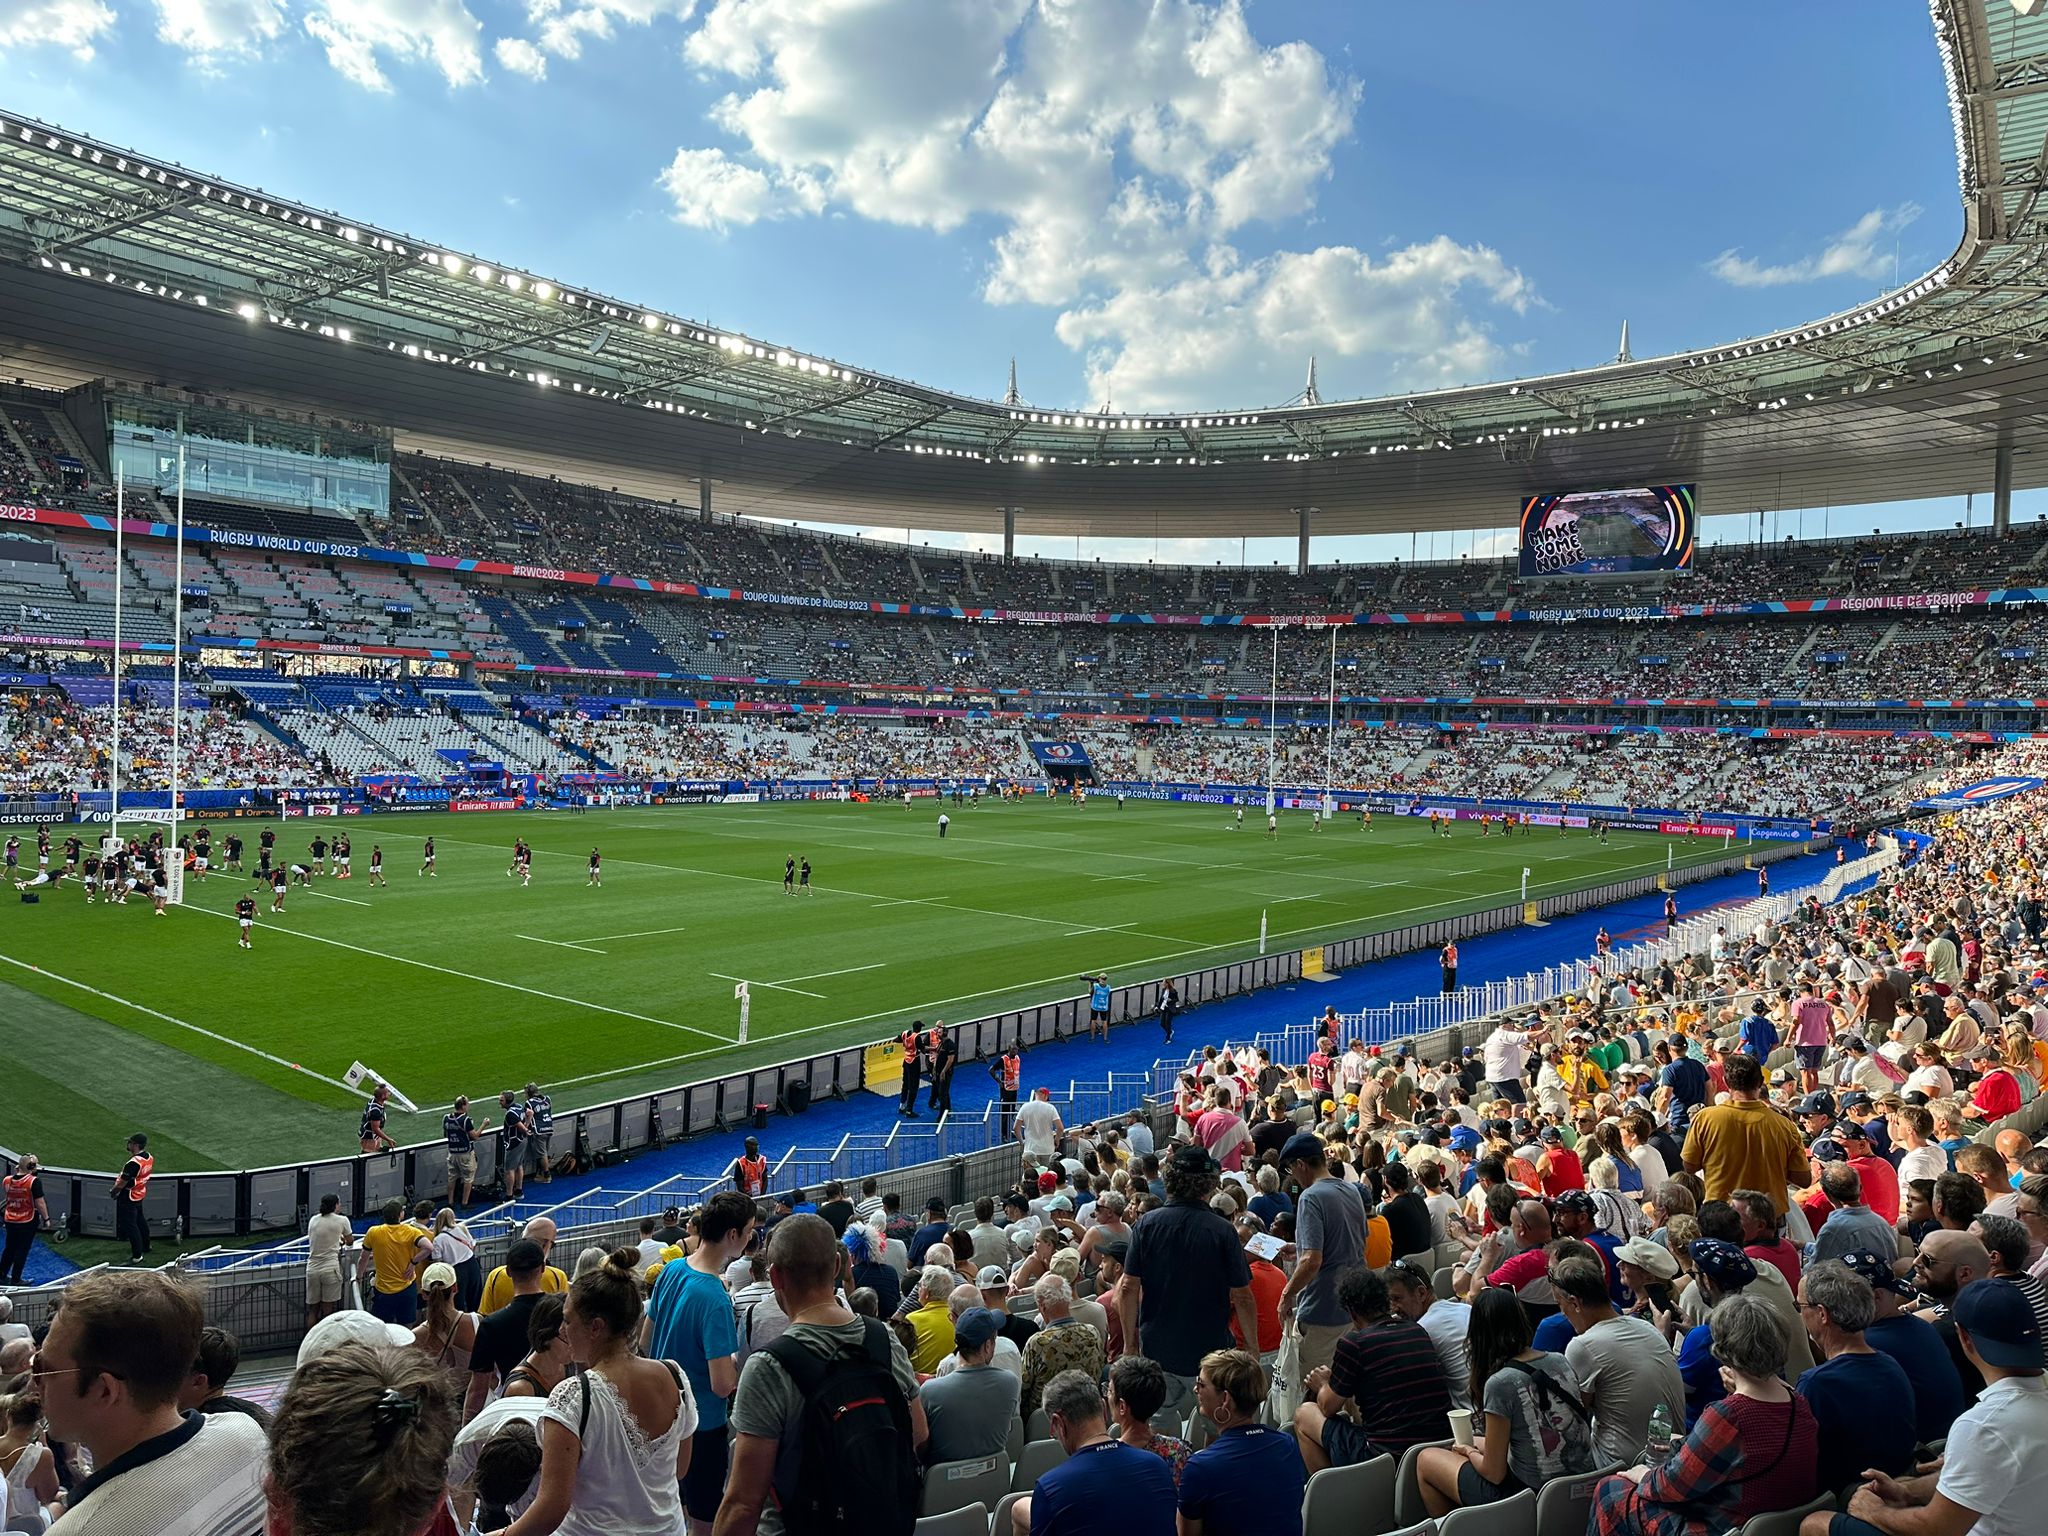 Photo prise à l'intérieur du stade de France